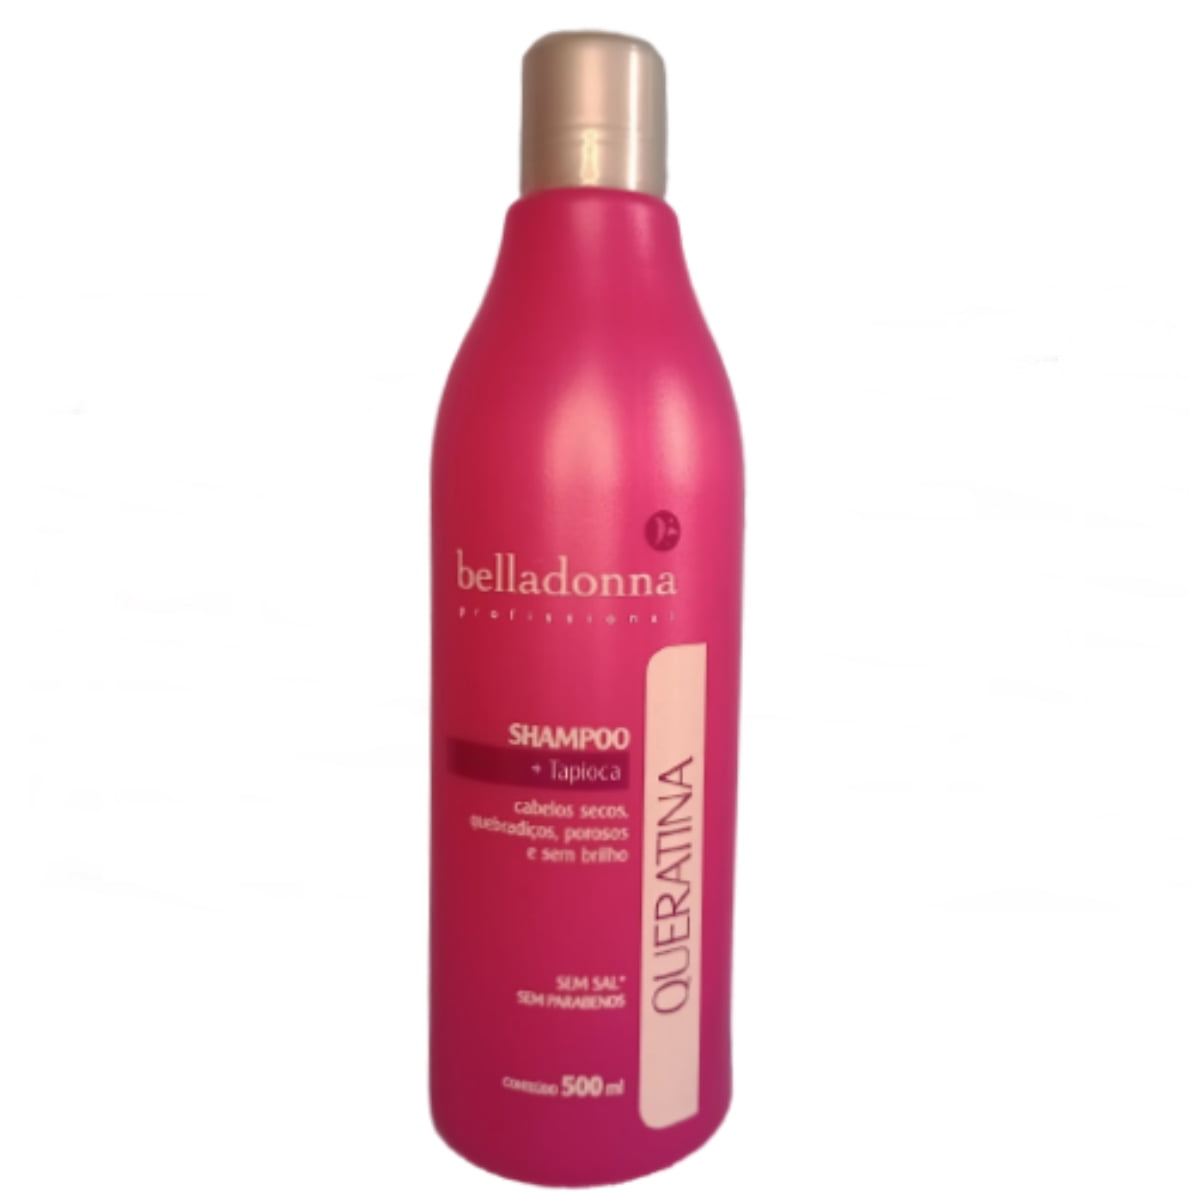 Shampoo Belladonna Queratina + Tapioca Cabelos Secos Quebradiços Porosos